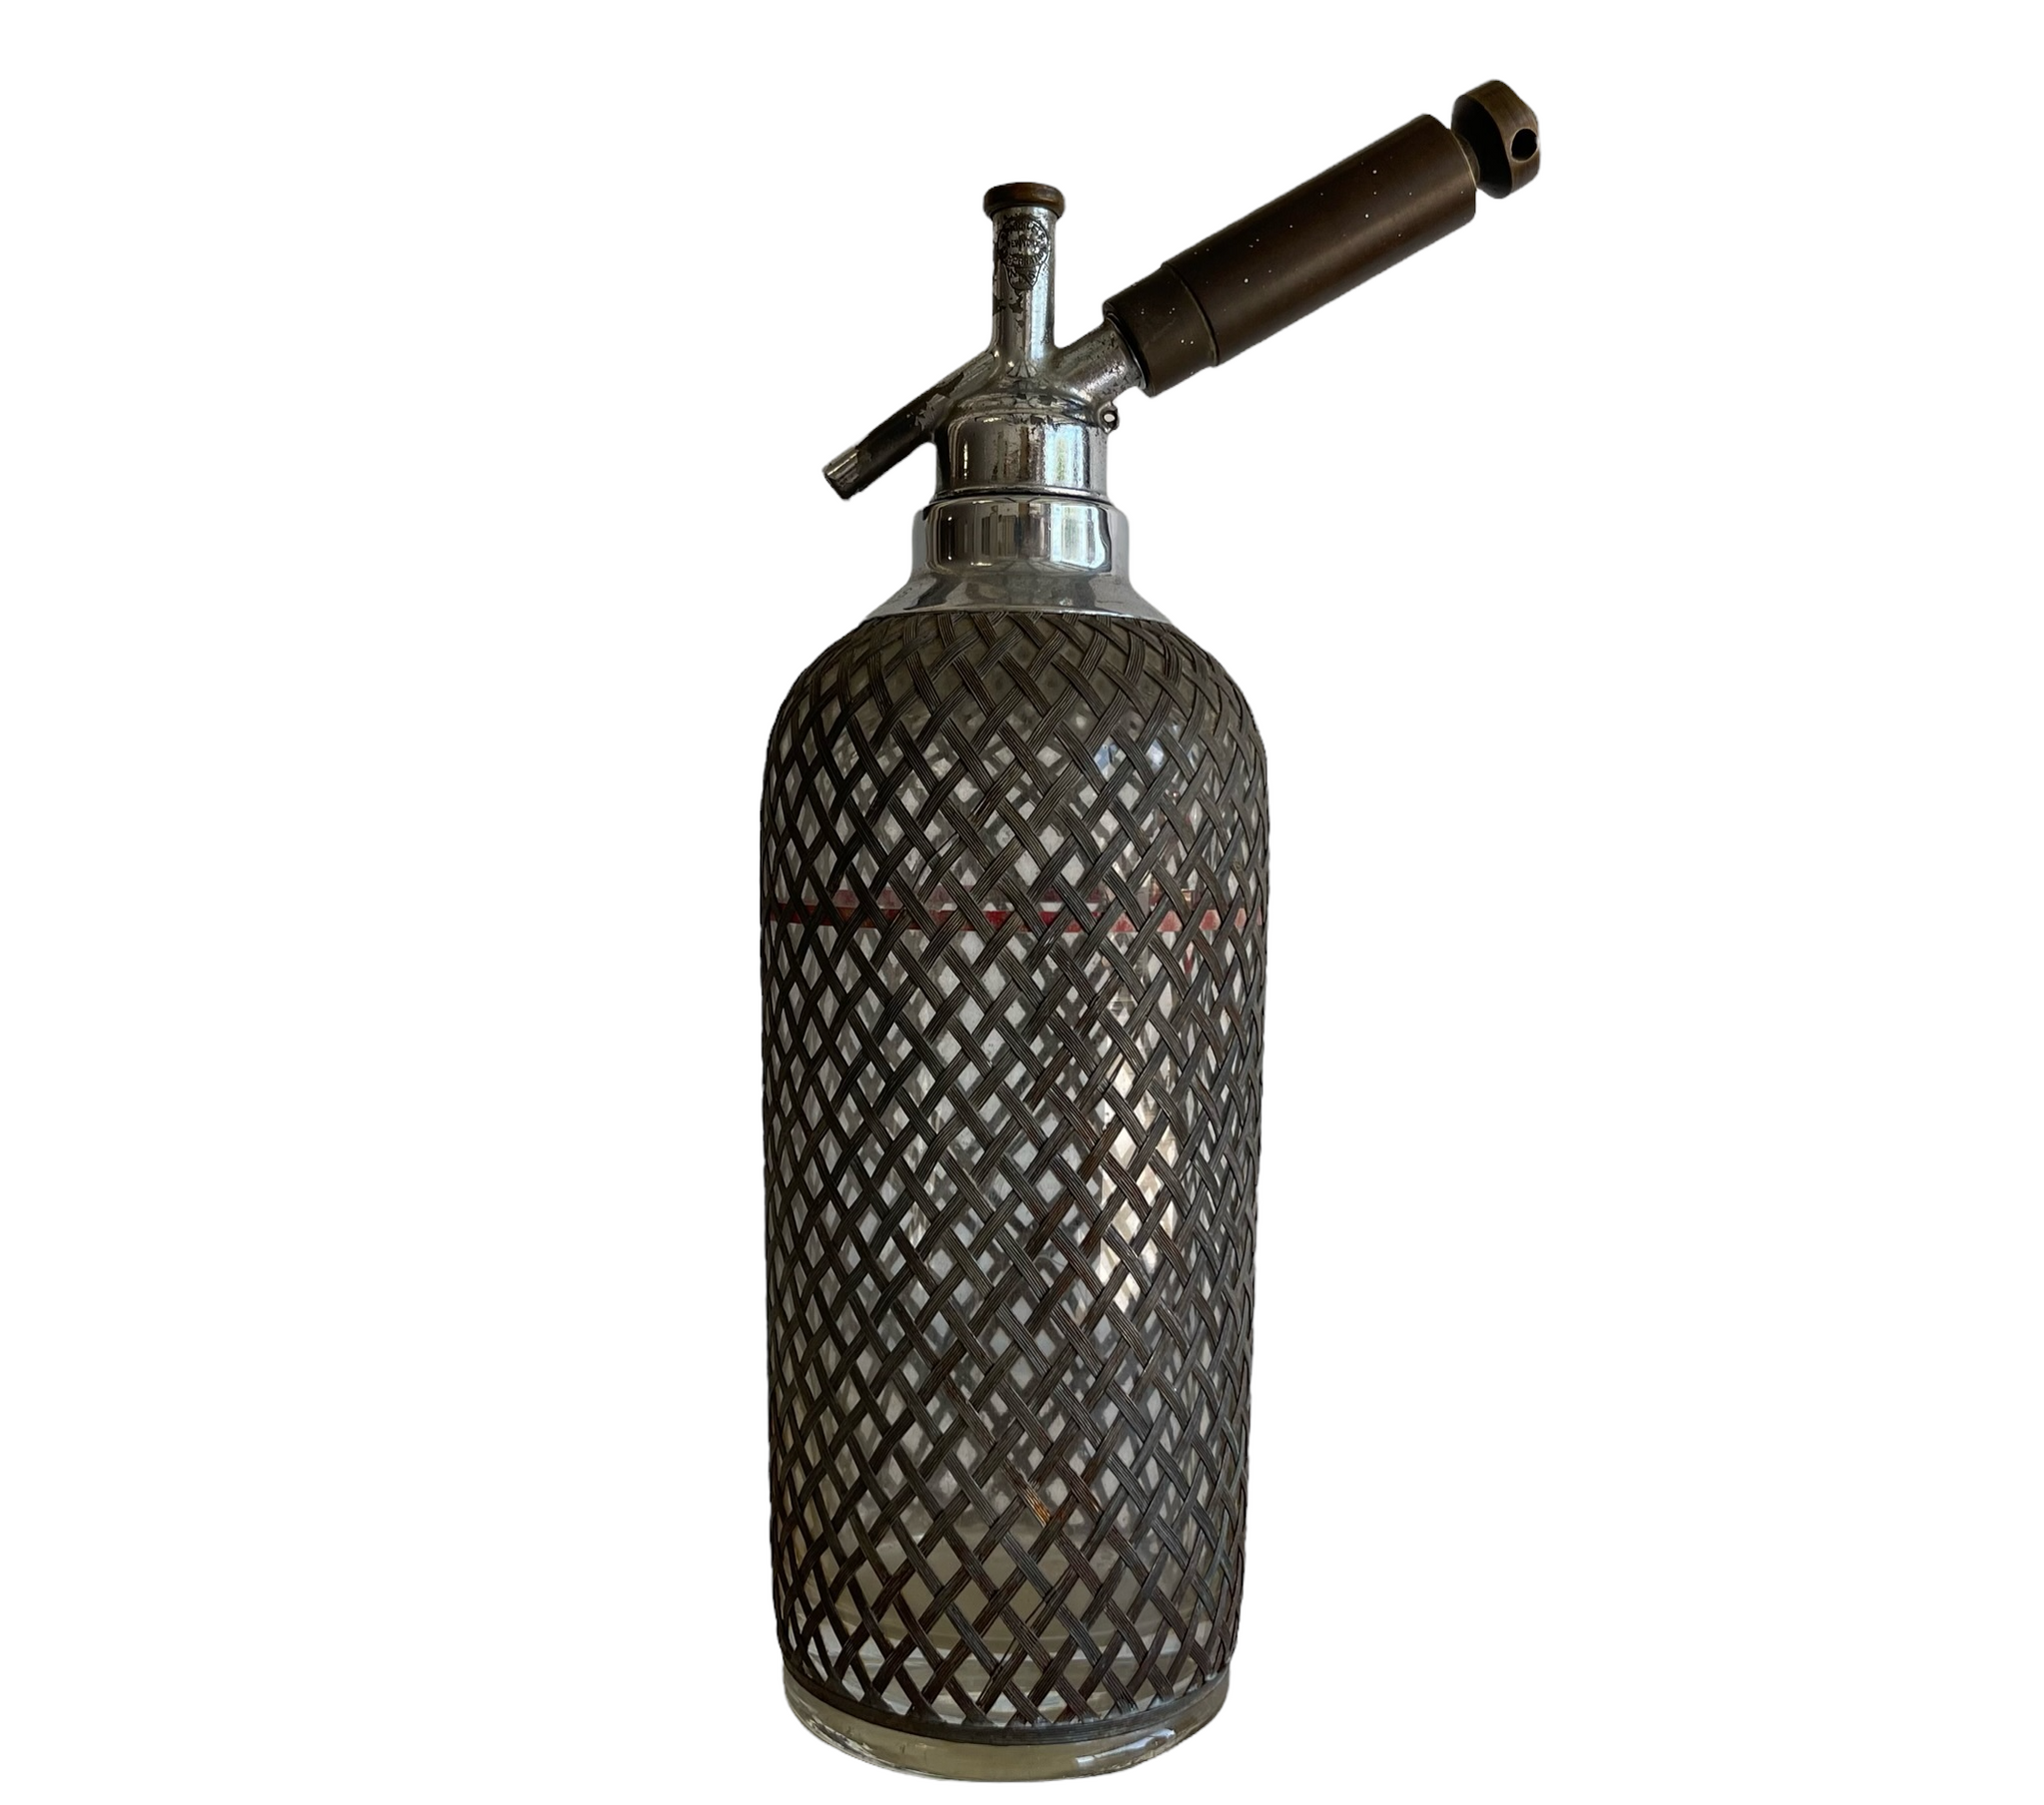 Antique Soda Siphon Pressed Glass Bottle w/Foniciello & Zottoli Adv. -  Pen Parts Store